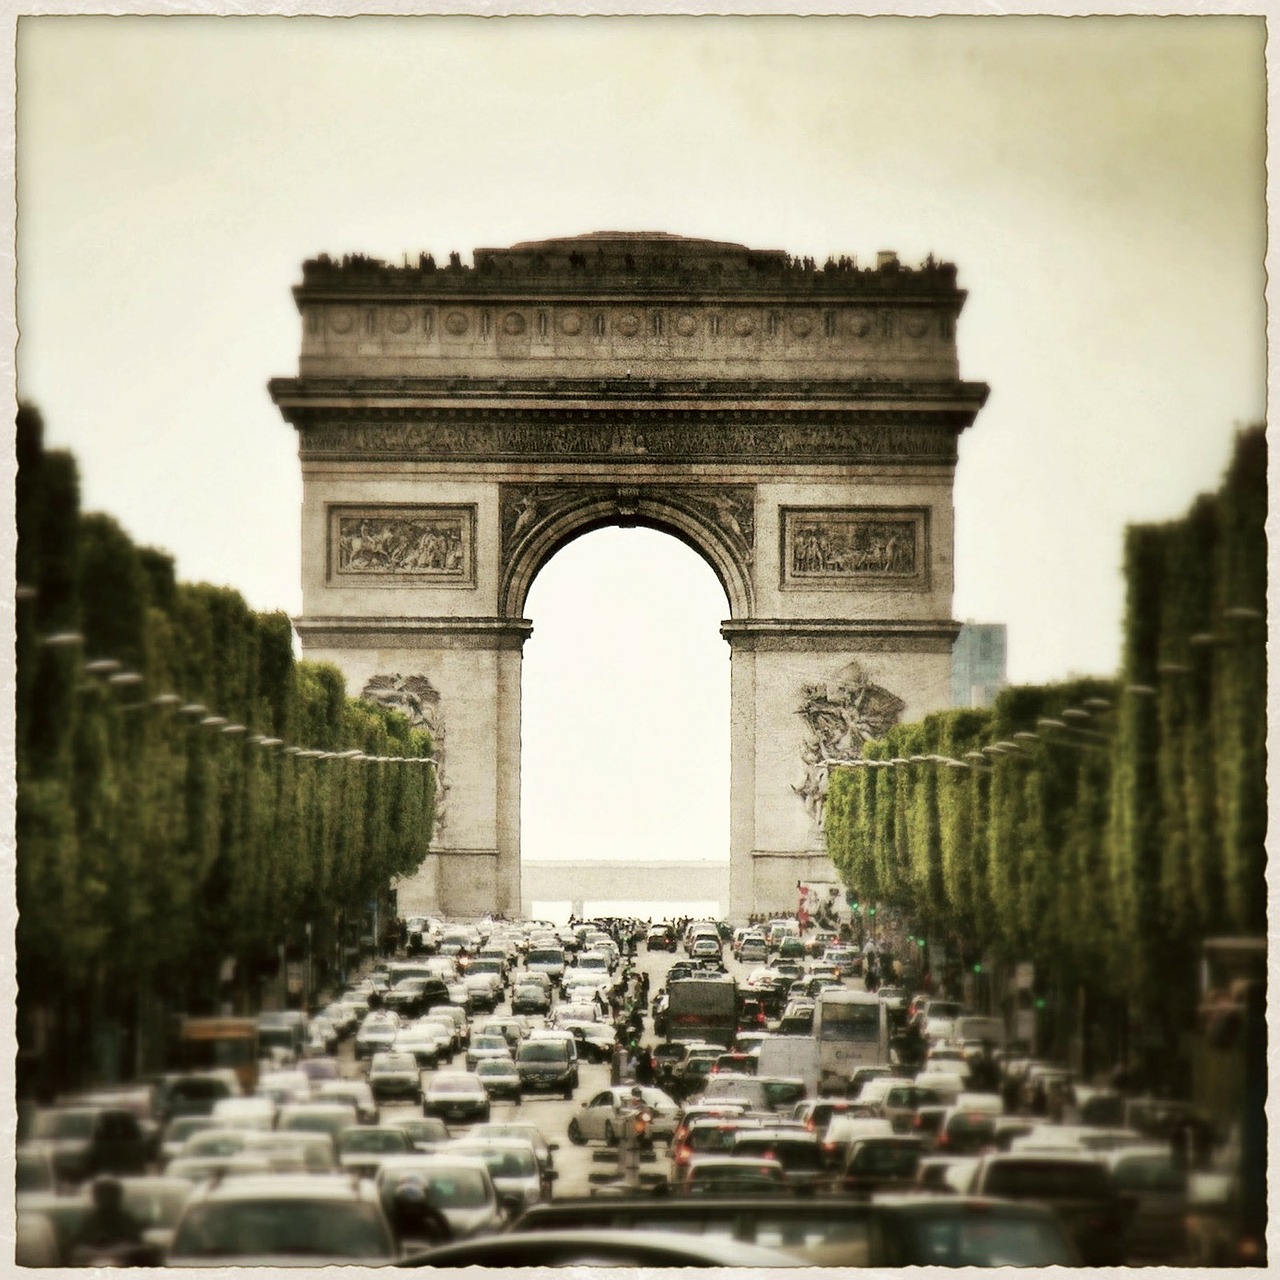 arc de triomphe paris france free photo